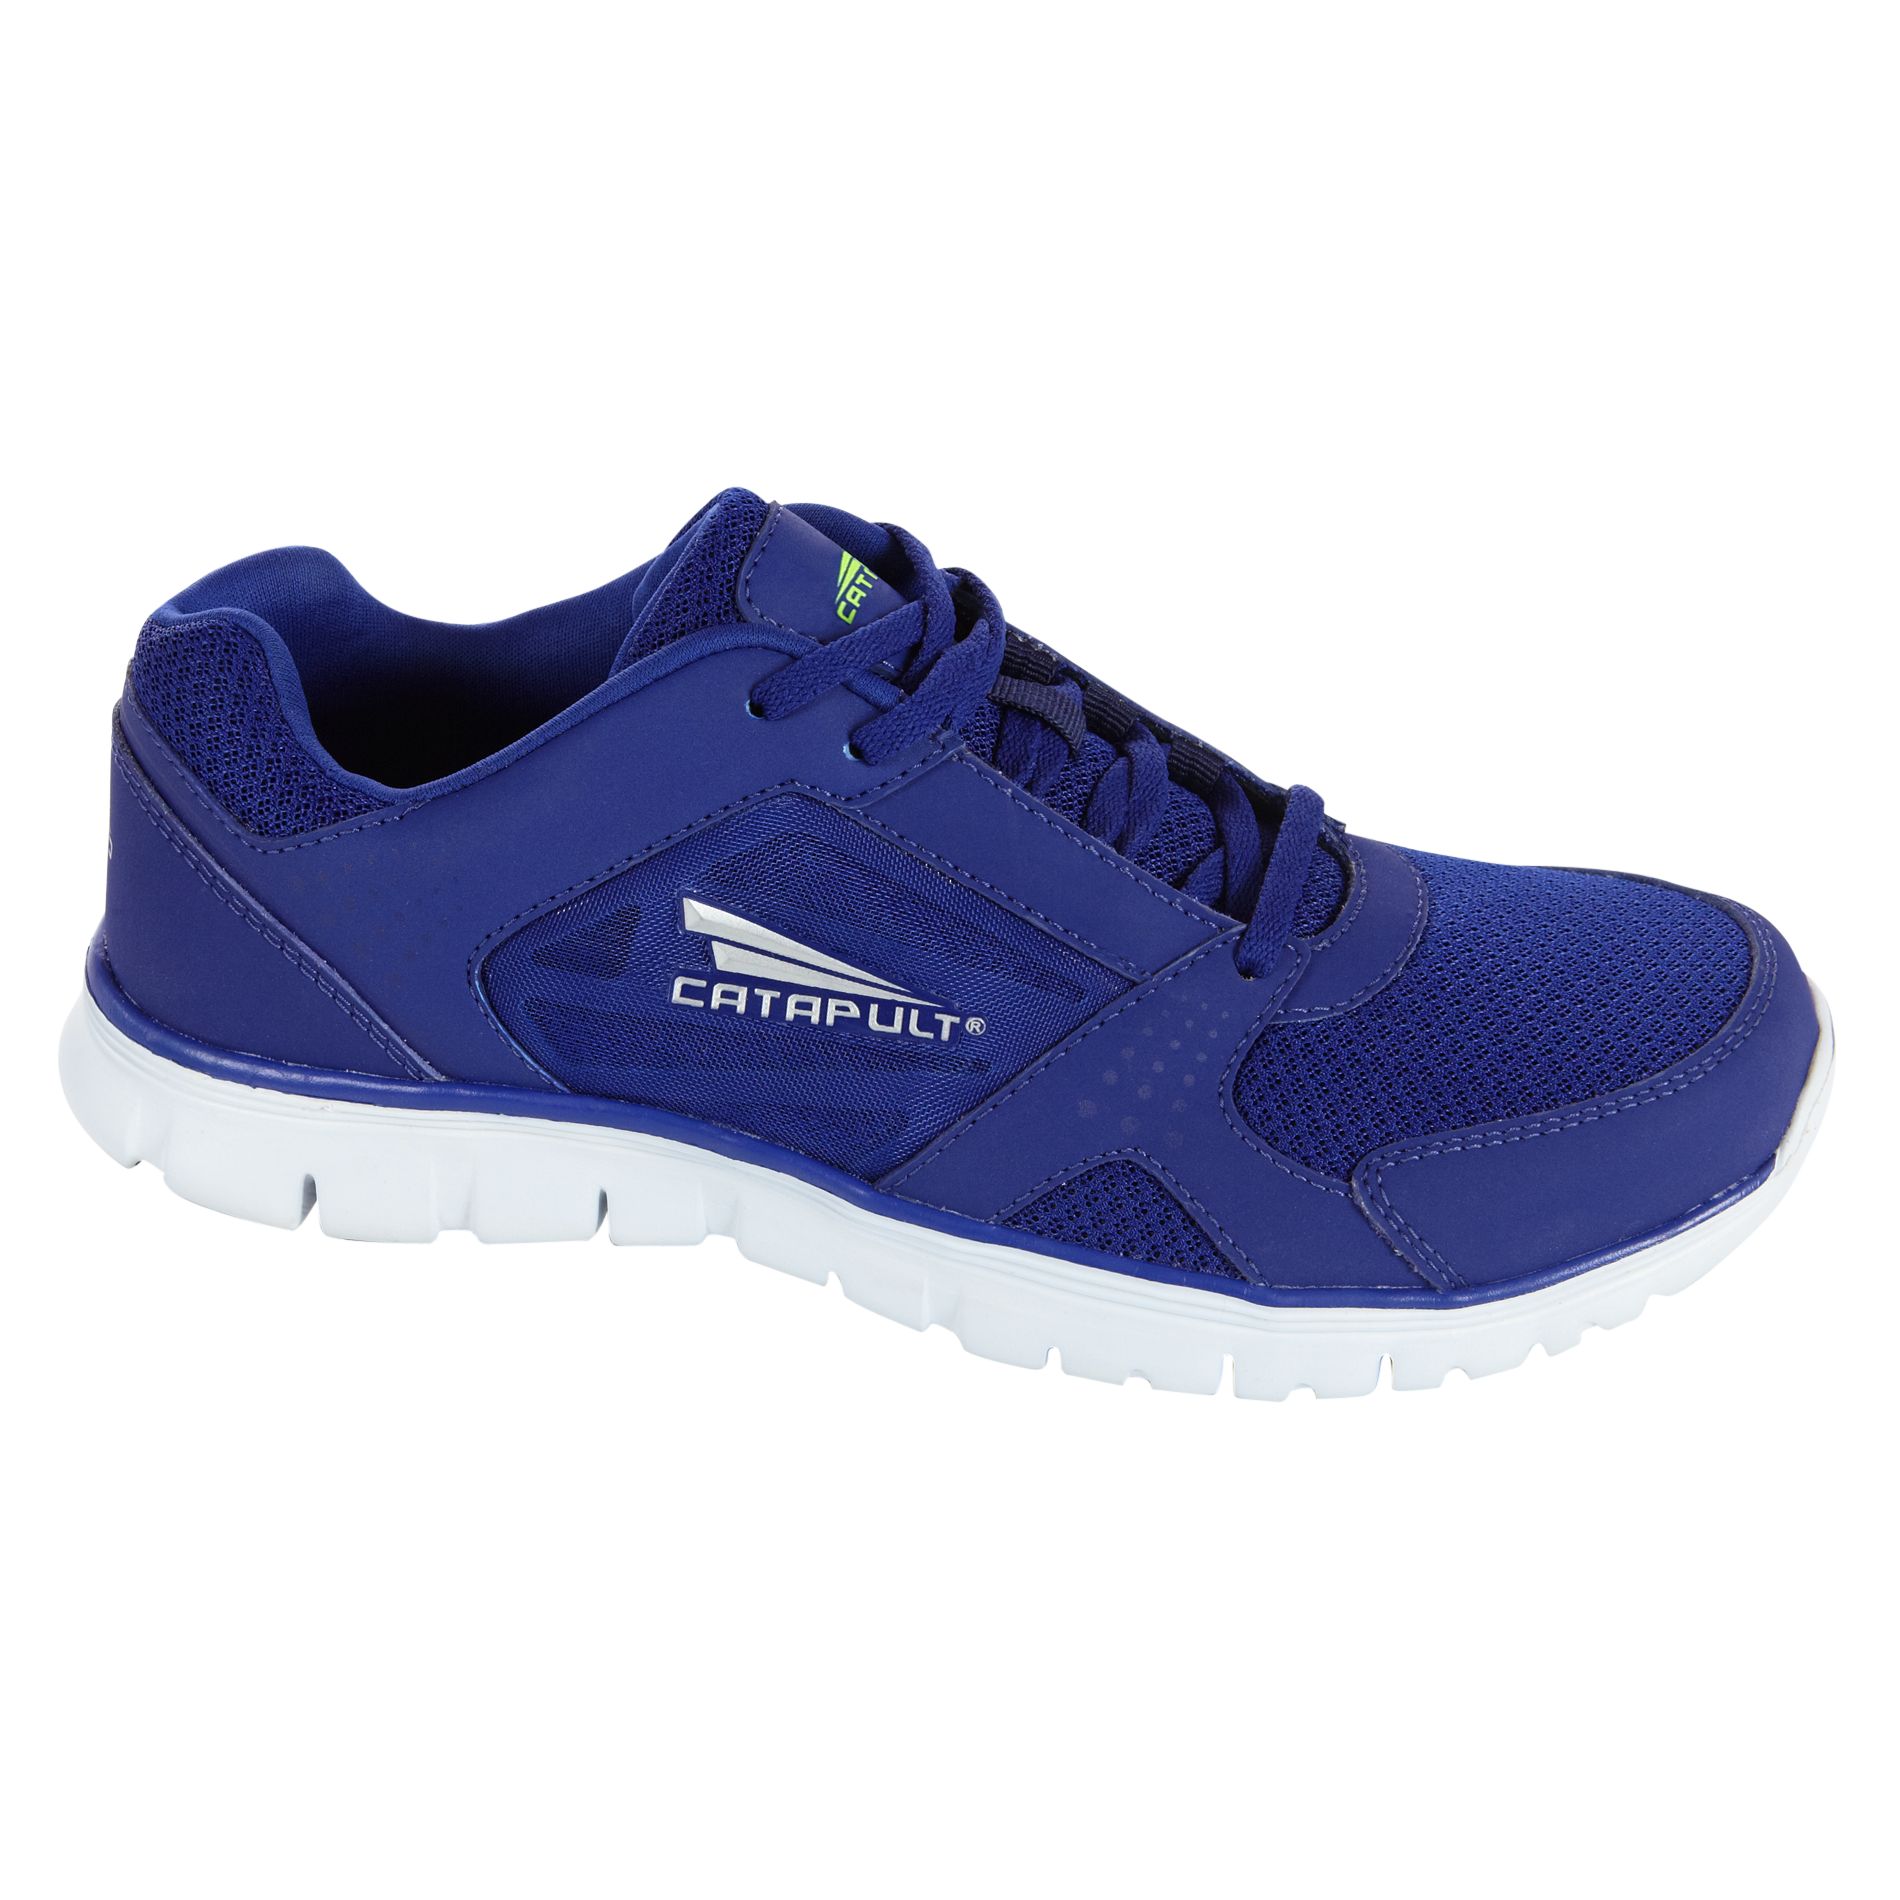 CATAPULT Men's Meteor Athletic Shoe - Blue